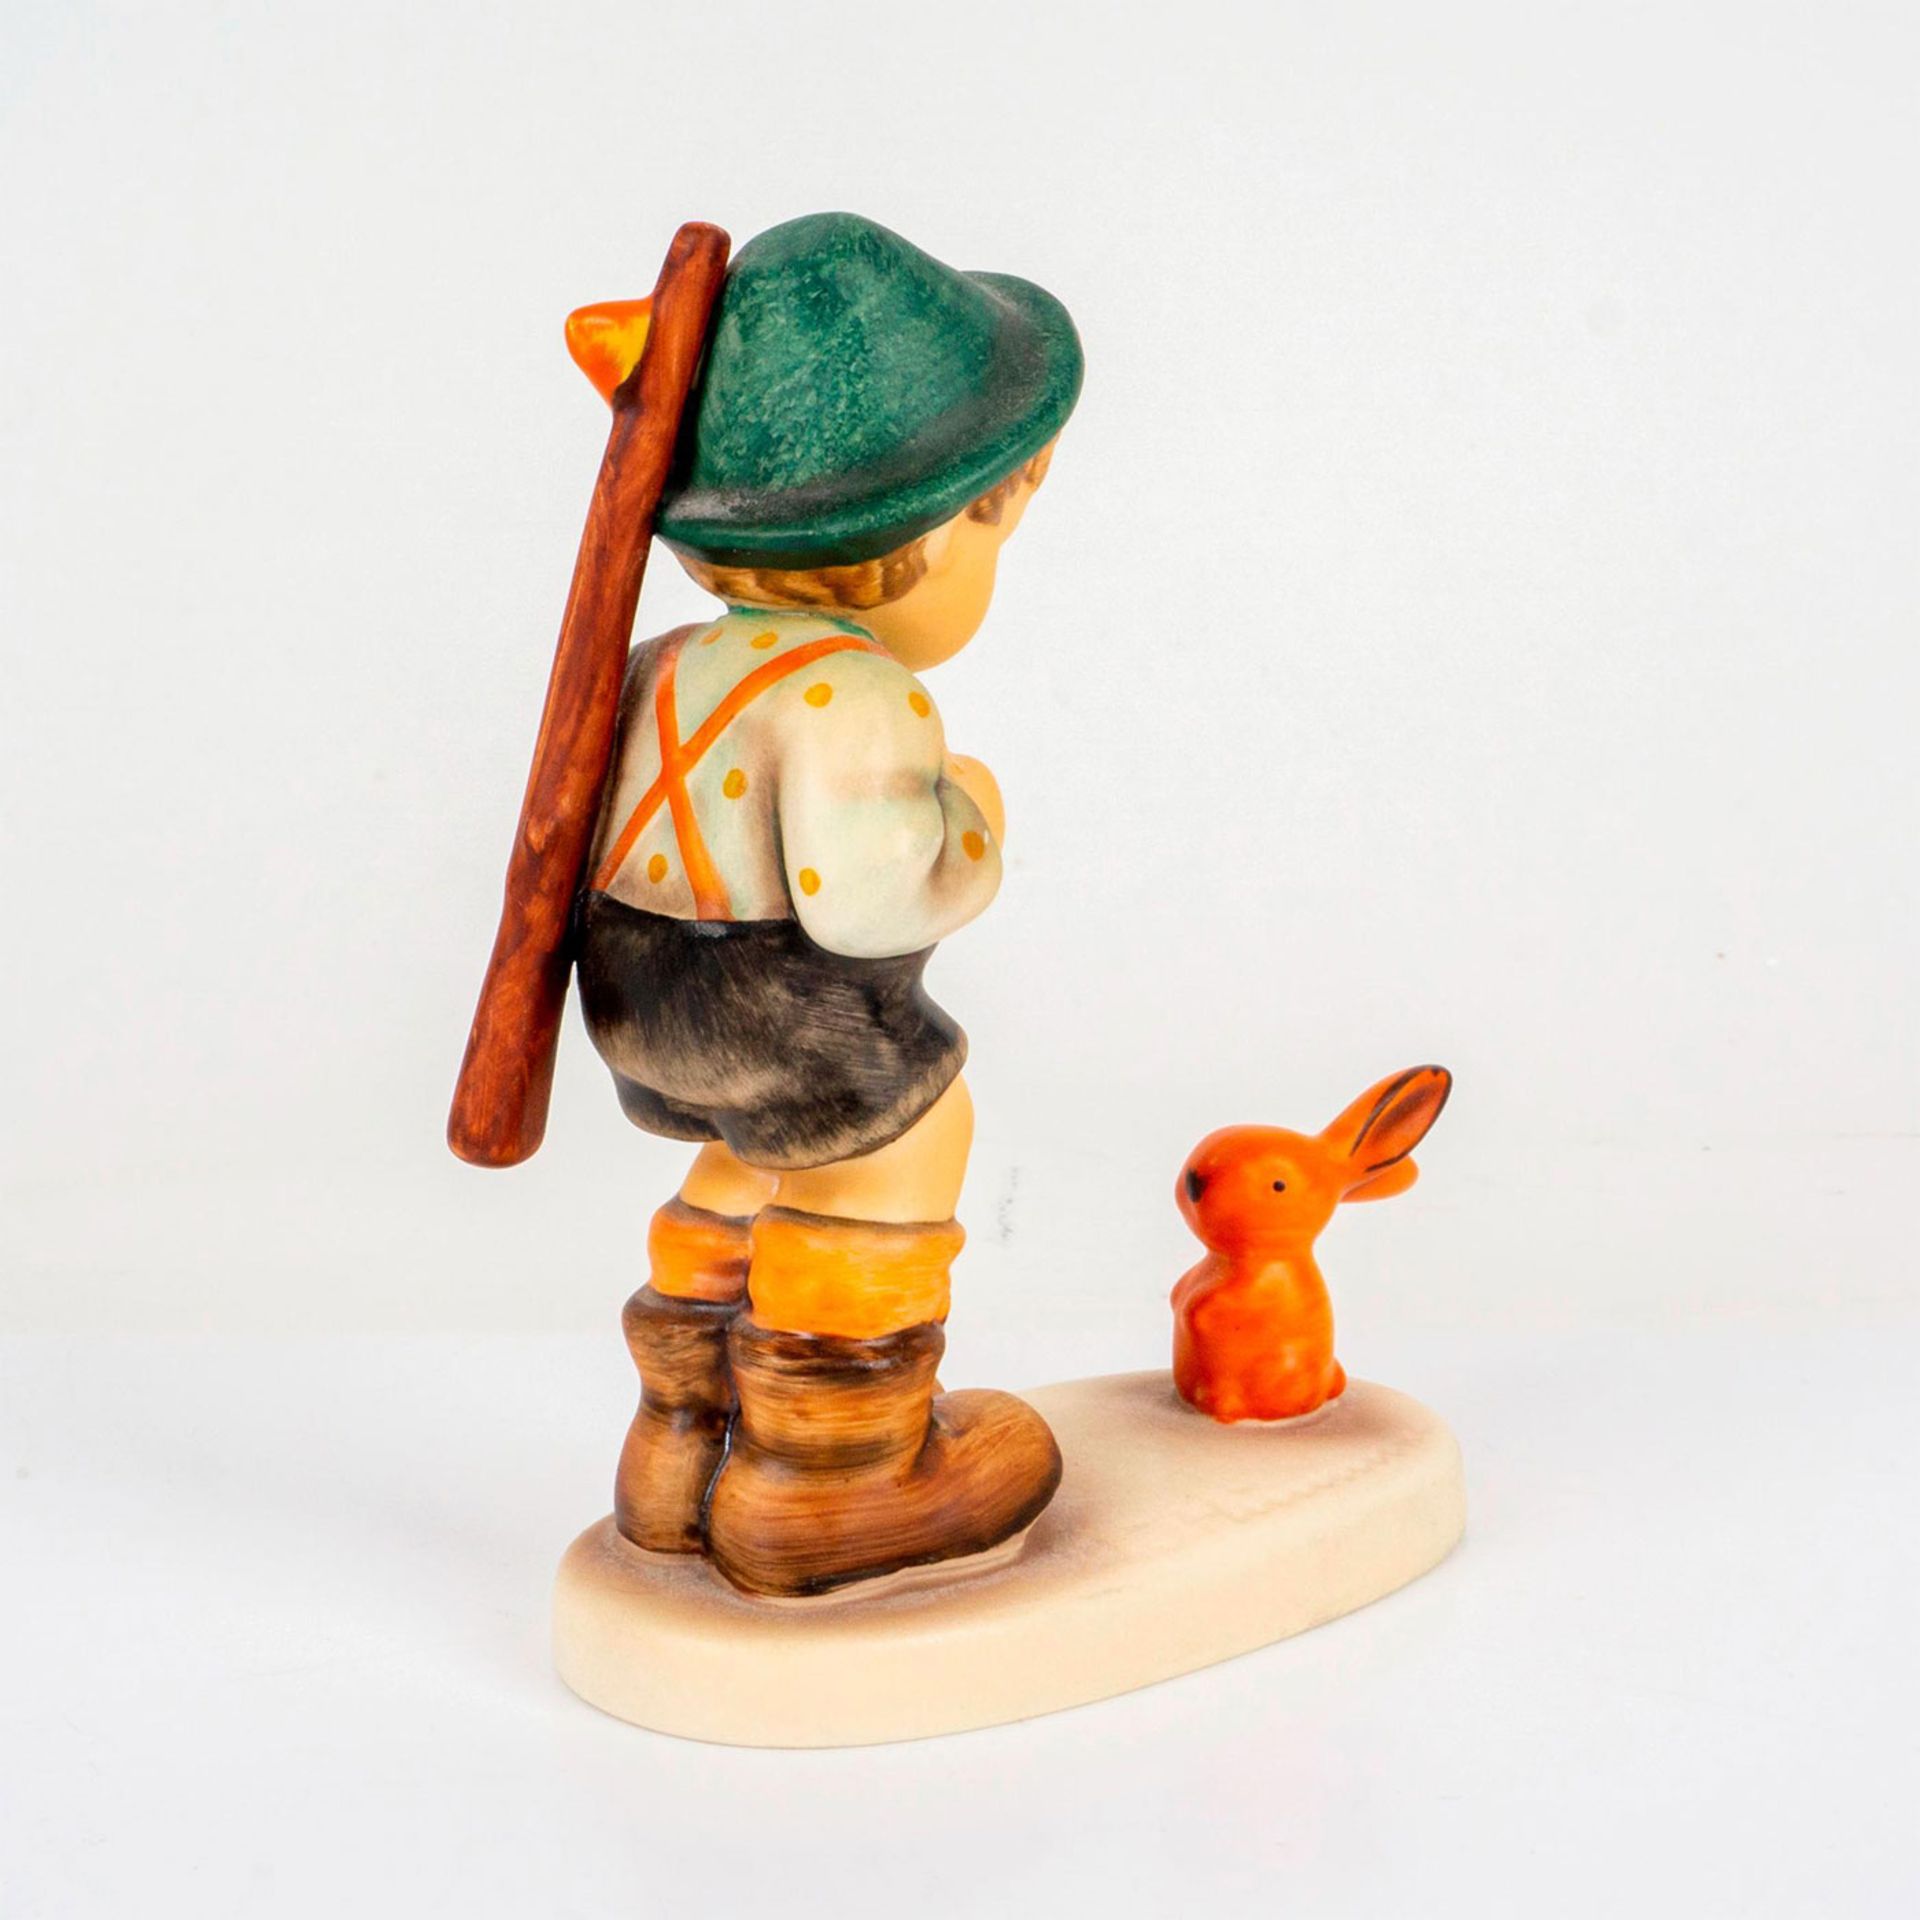 Goebel Hummel Figurine, Little Huntsman - Image 2 of 3